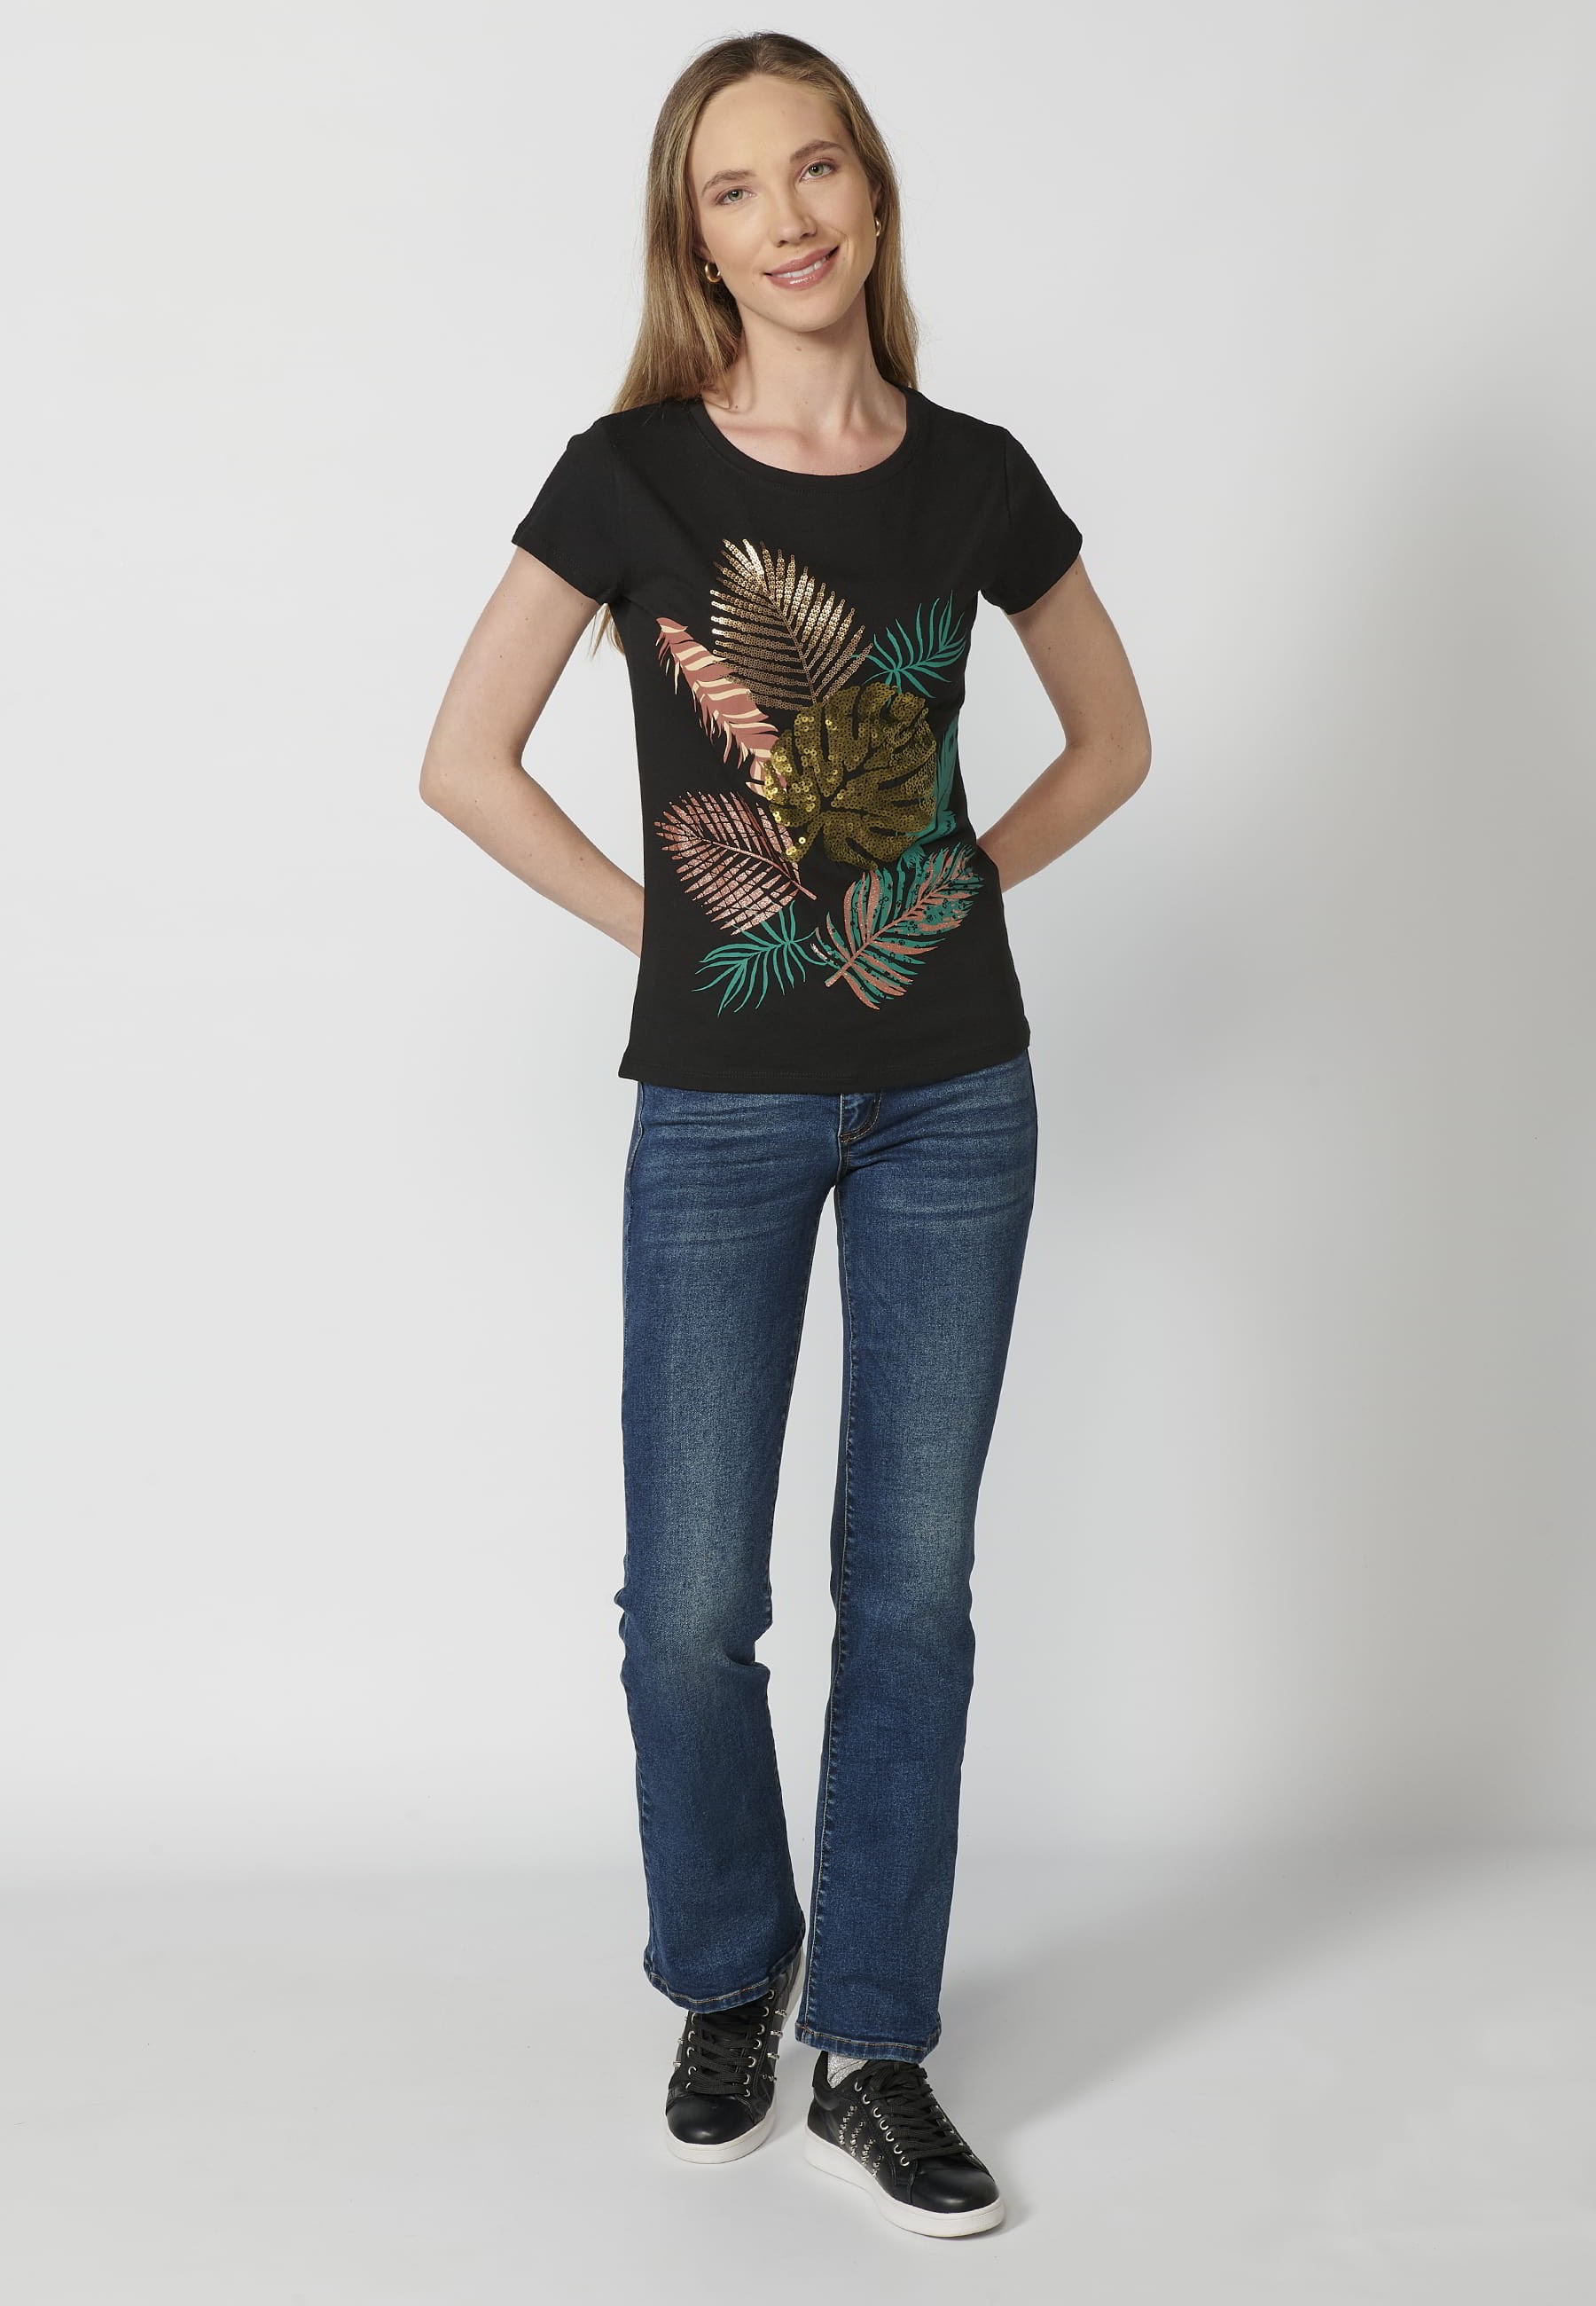 Damen-Kurzarm-T-Shirt aus Baumwolle mit schwarzem Blattmuster und Rundhalsausschnitt 3